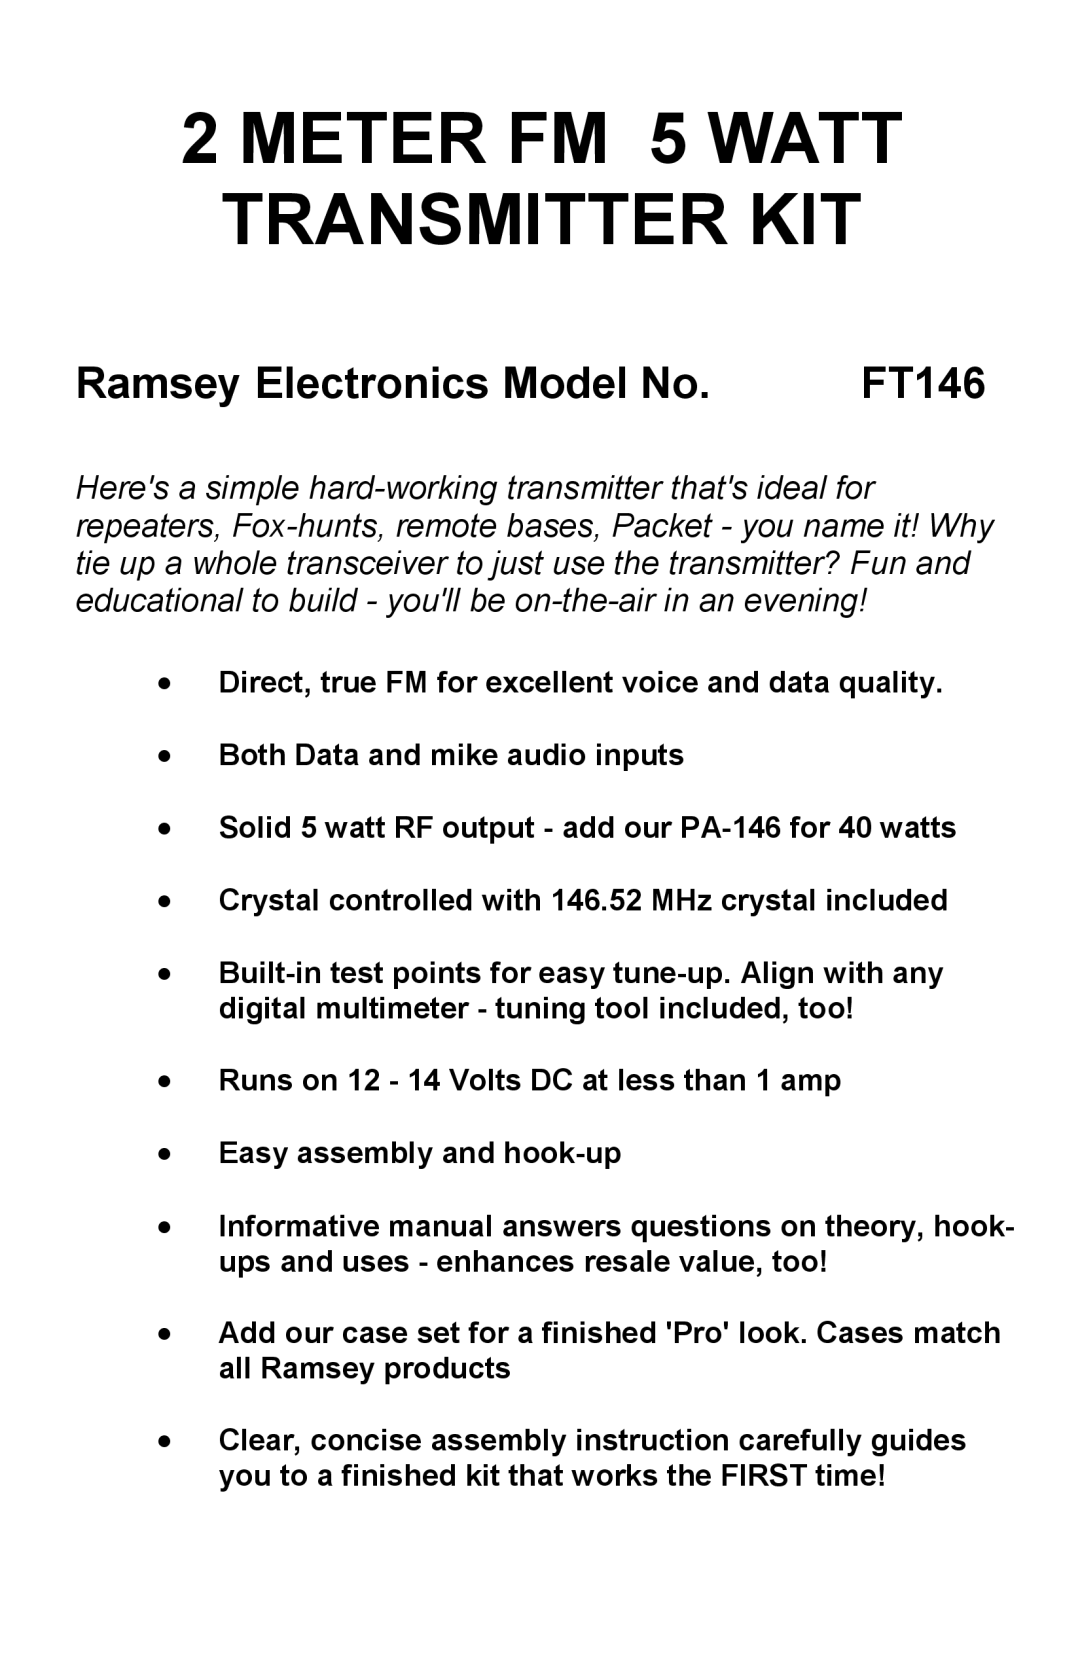 Ramsey Electronics FT146 manual METER FM 5 WATT TRANSMITTER KIT, Ramsey Electronics Model No 